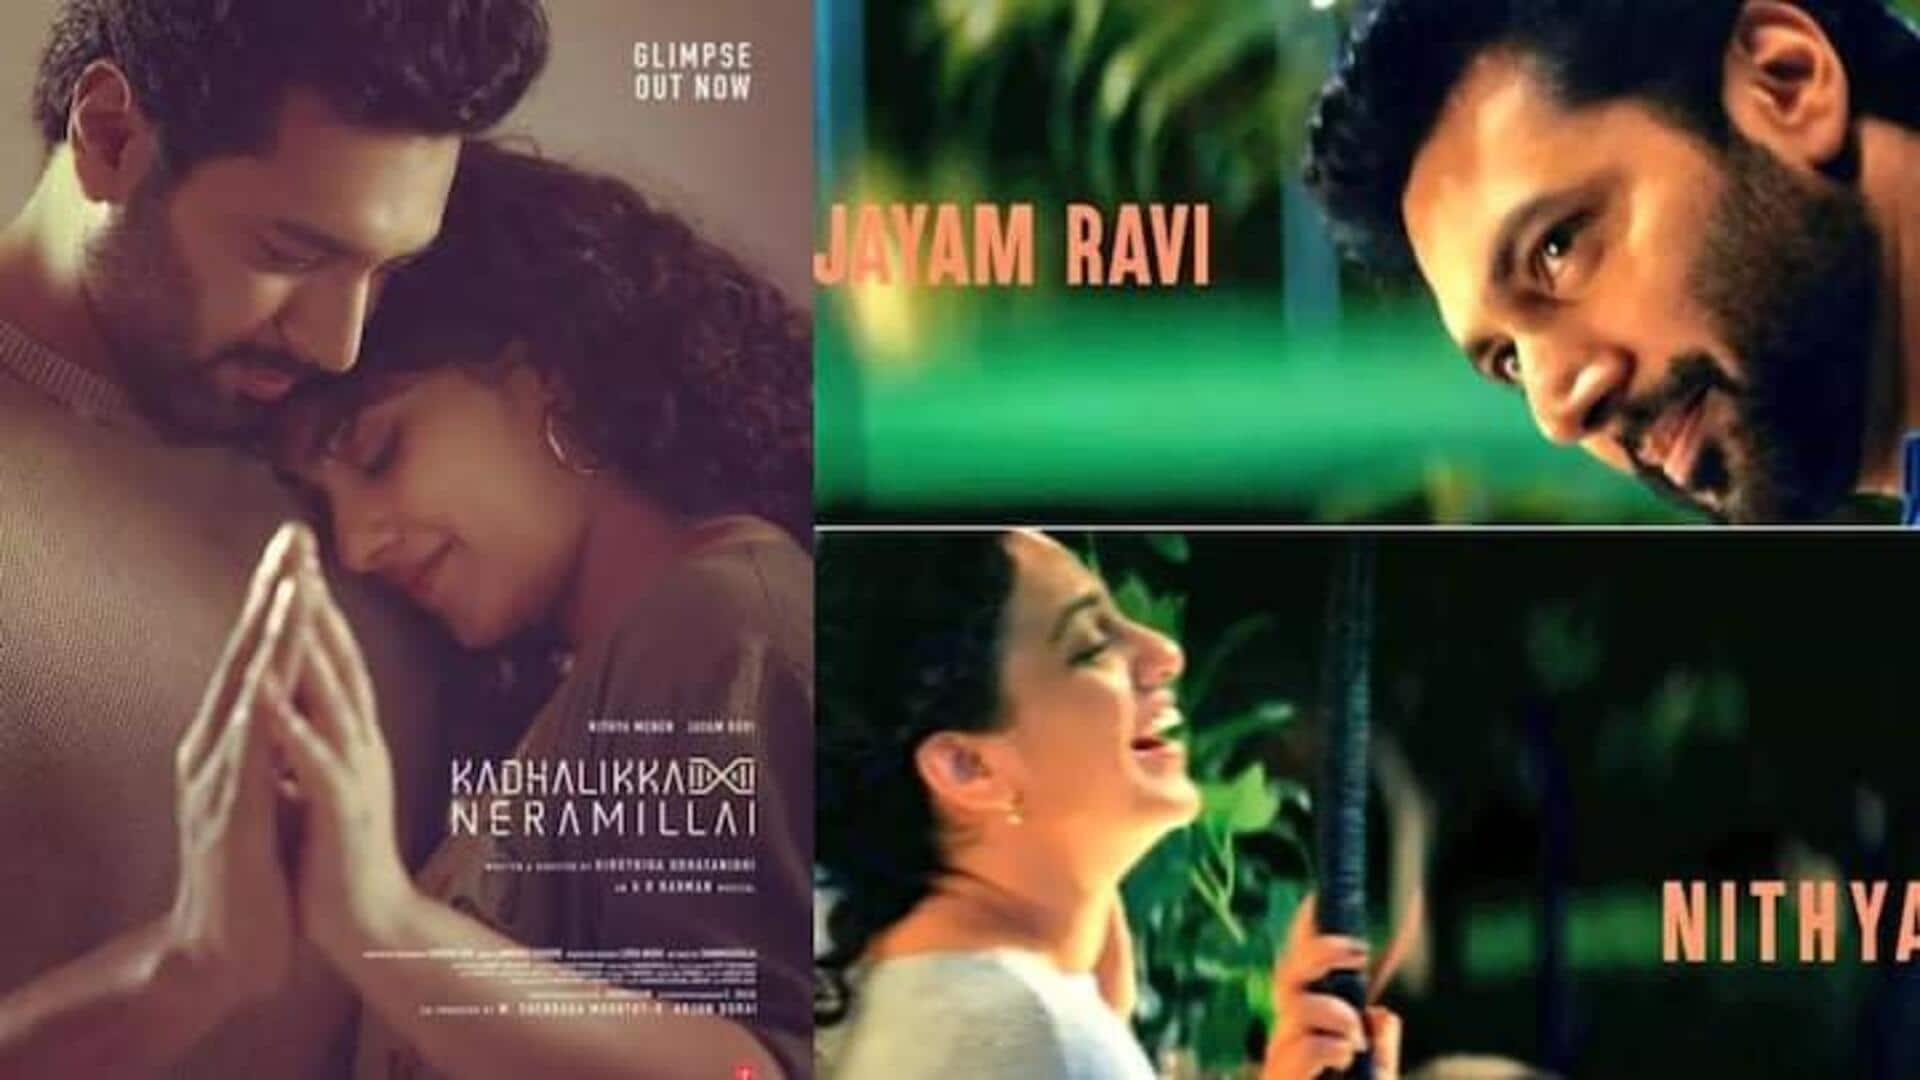 ஜெயம் ரவி, நித்யா மேனன் நடிப்பில் 'காதலிக்க நேரமில்லை' டீசர் வெளியானது